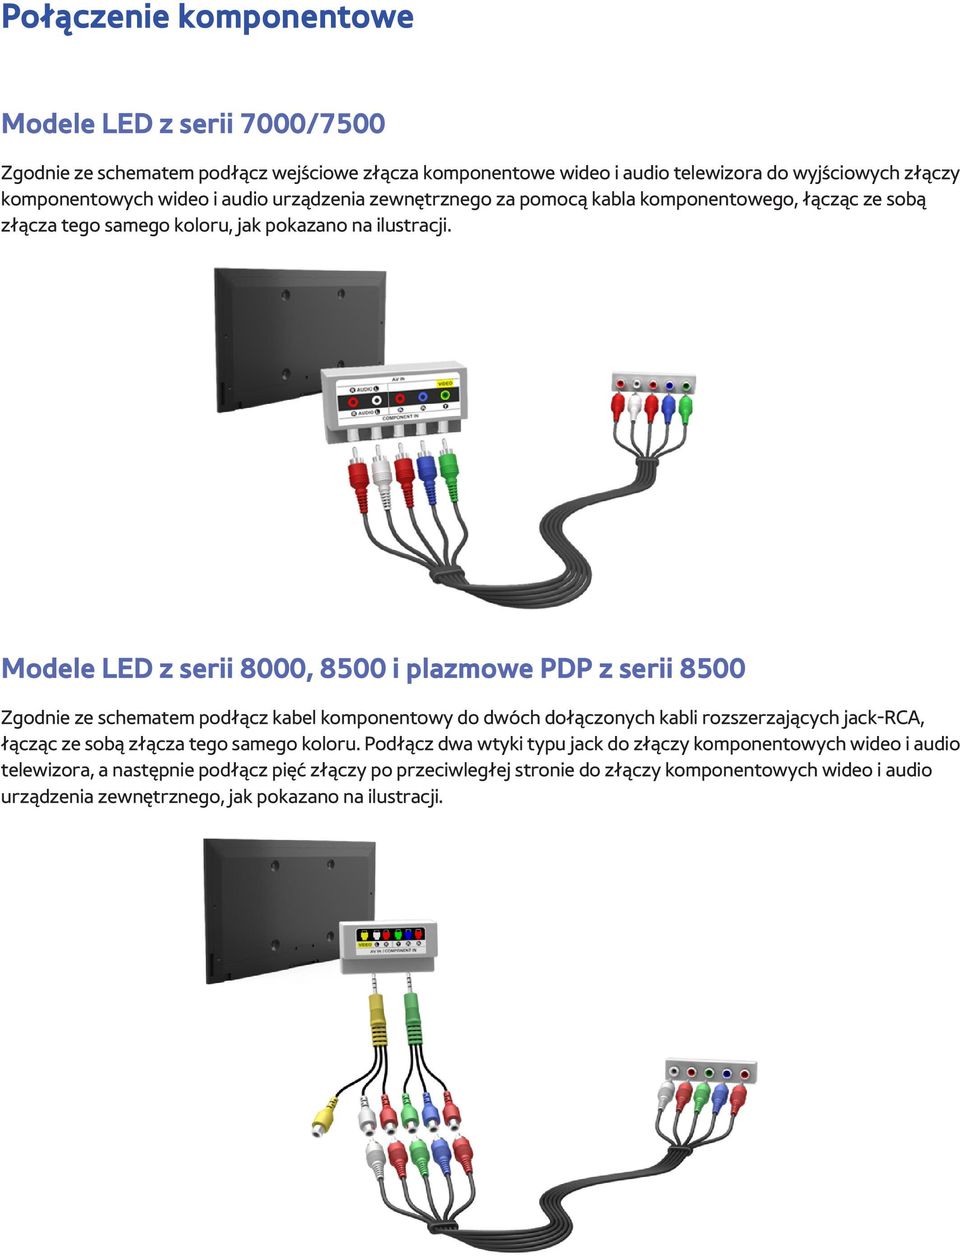 Modele LED z serii 8000, 8500 i plazmowe PDP z serii 8500 Zgodnie ze schematem podłącz kabel komponentowy do dwóch dołączonych kabli rozszerzających jack-rca, łącząc ze sobą złącza tego